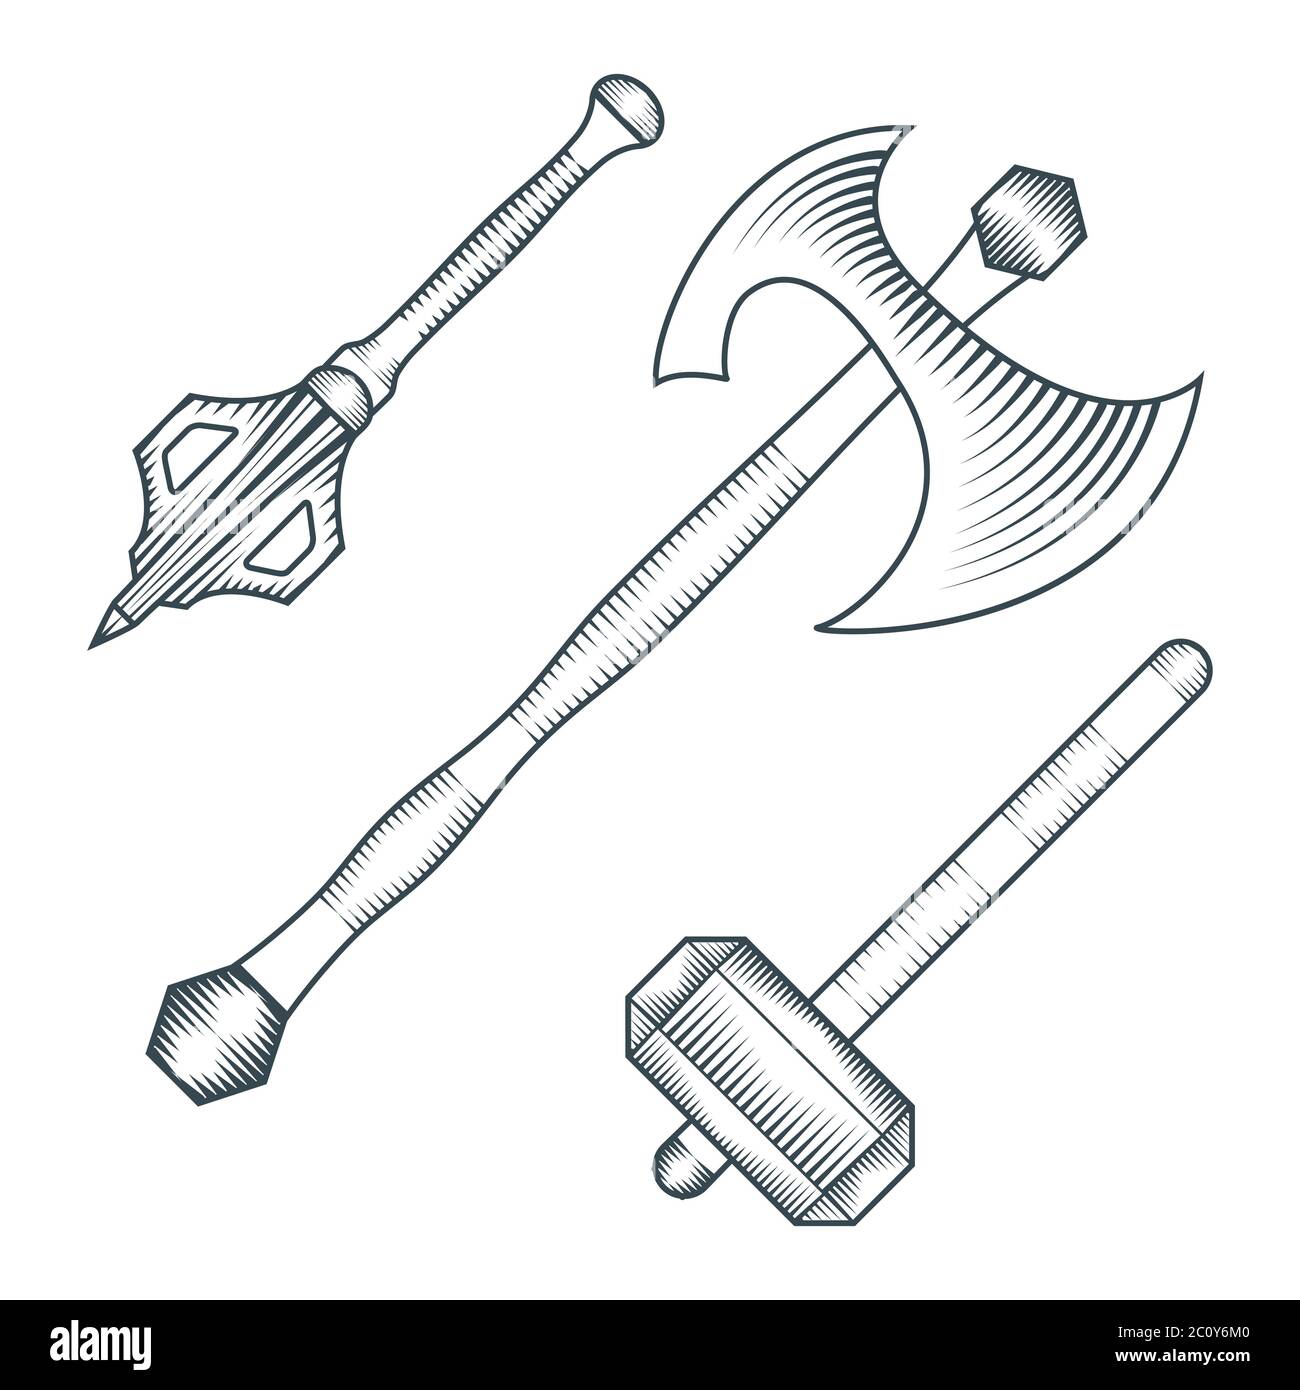 illustration de style gravure de warhammer mace de l'époque médiévale Banque D'Images